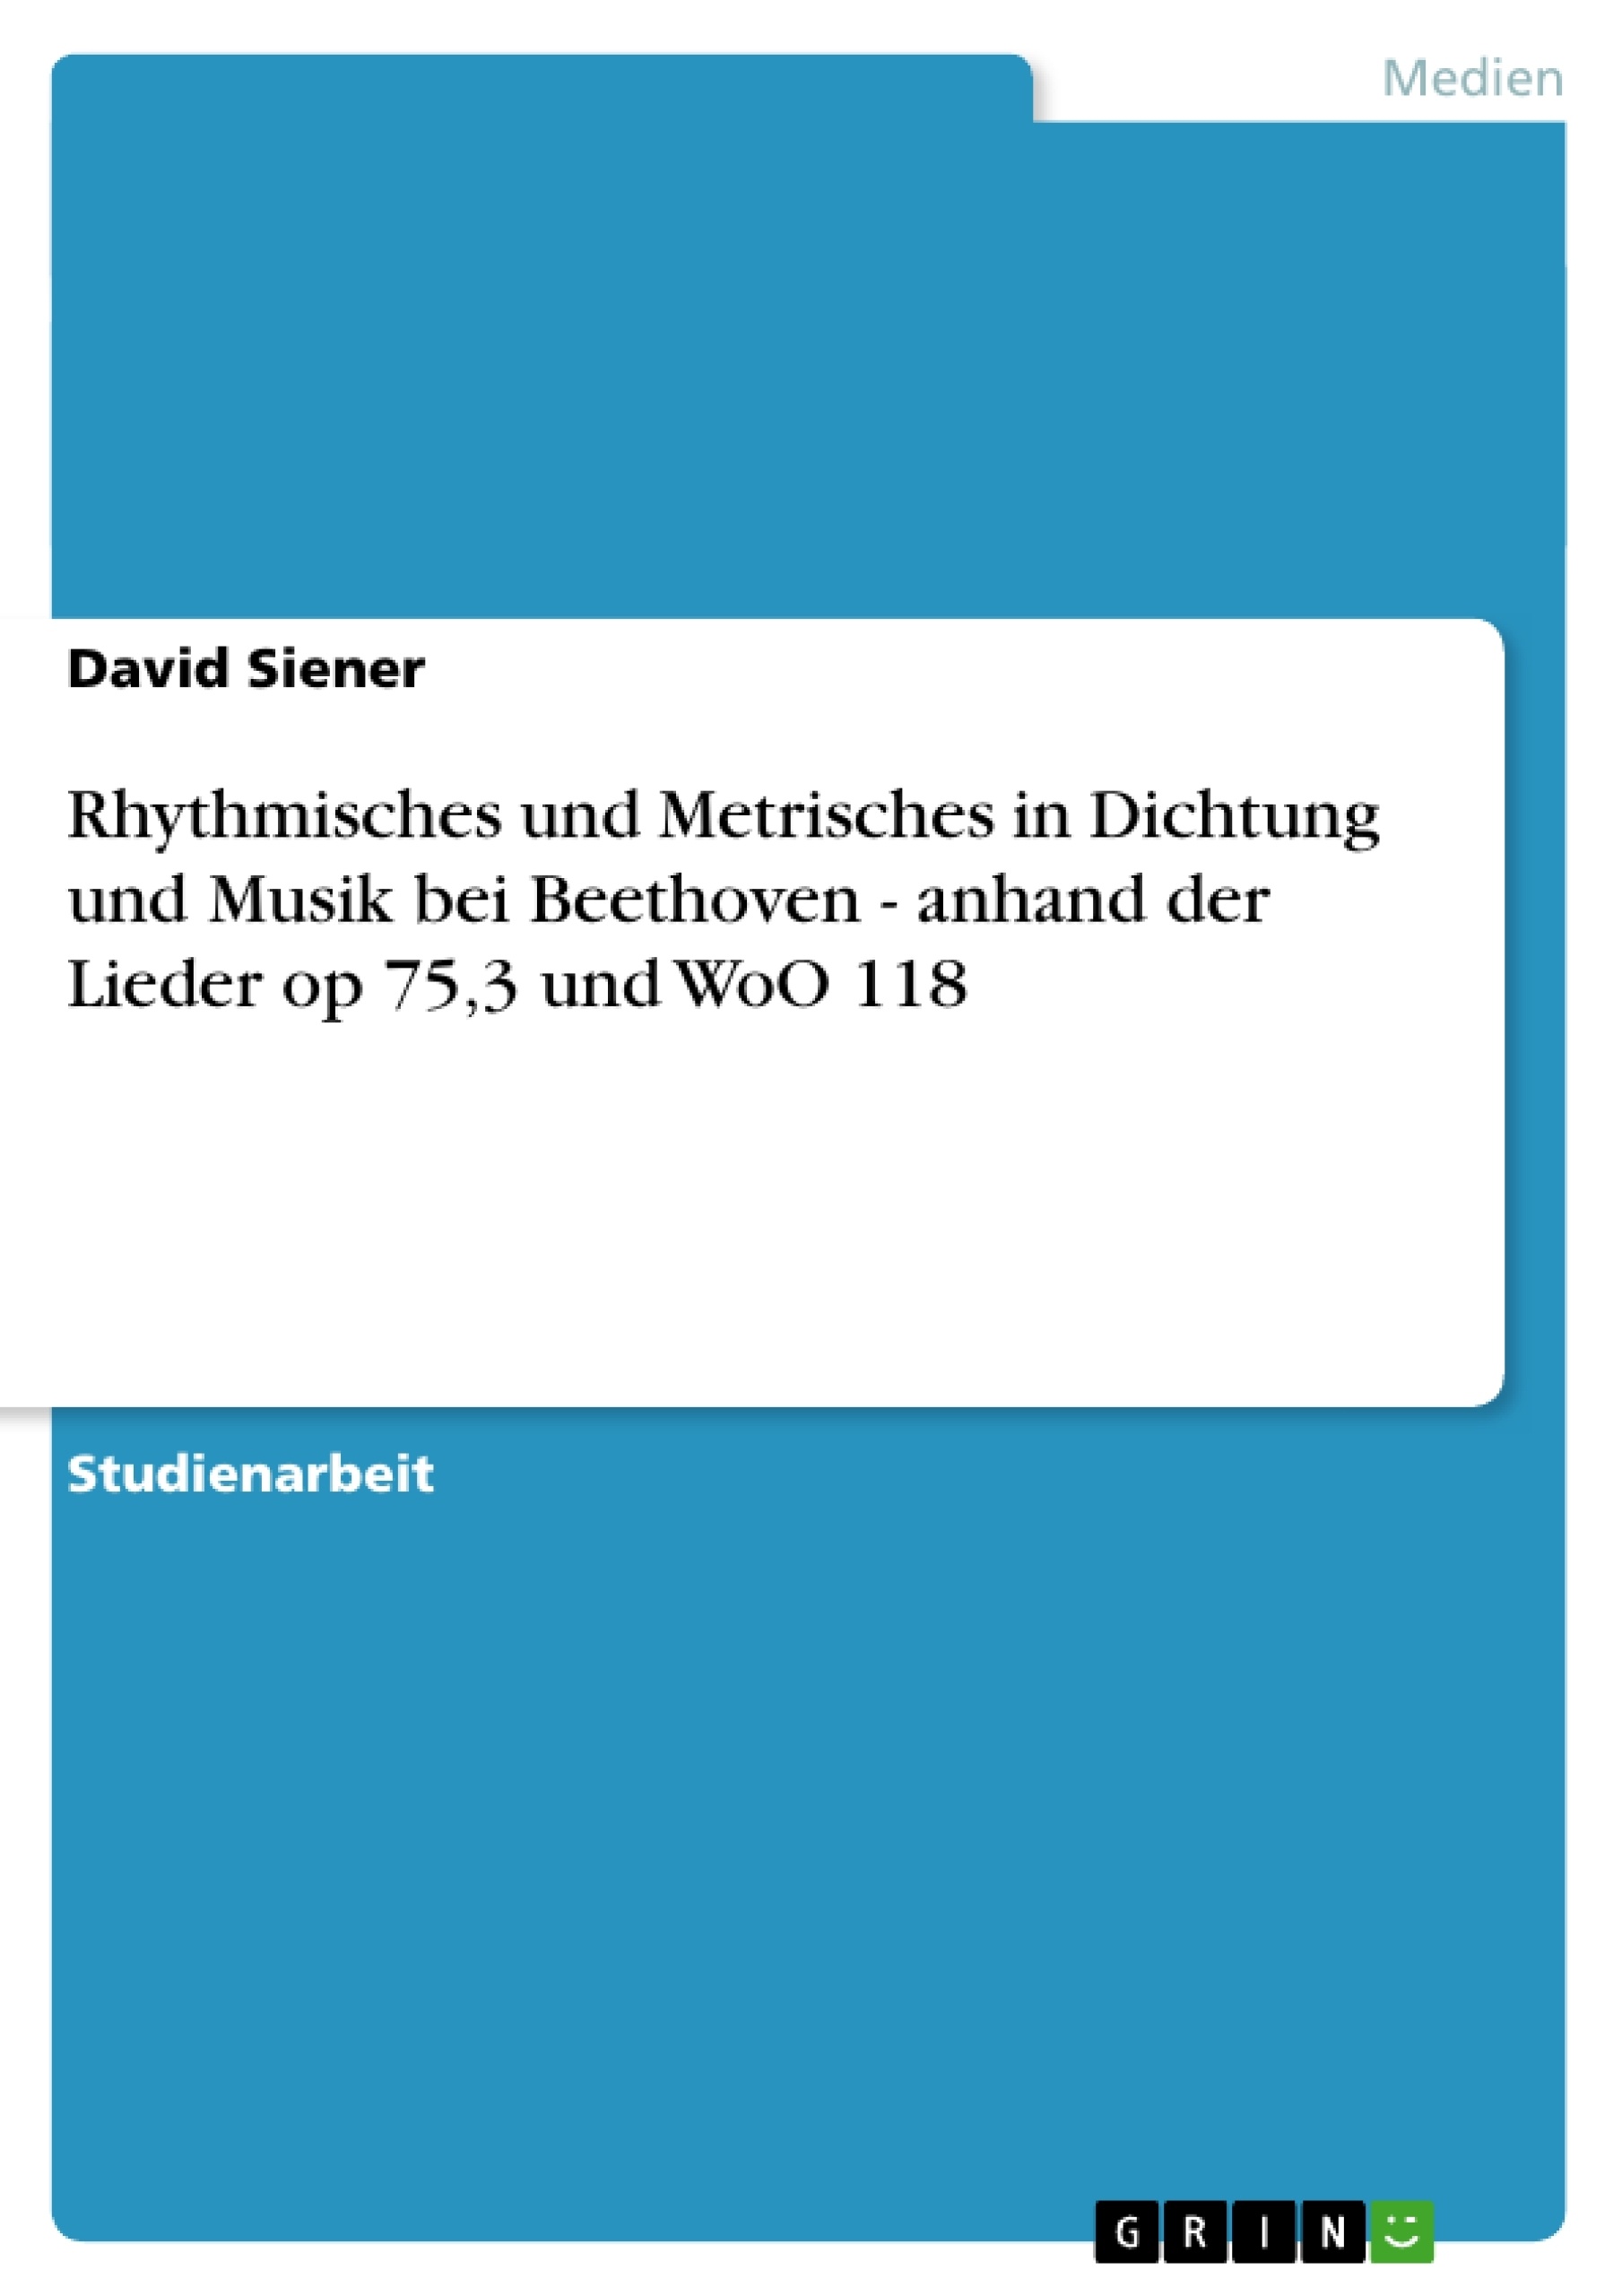 Title: Rhythmisches und Metrisches in Dichtung und Musik bei Beethoven - anhand der Lieder op 75,3 und WoO 118